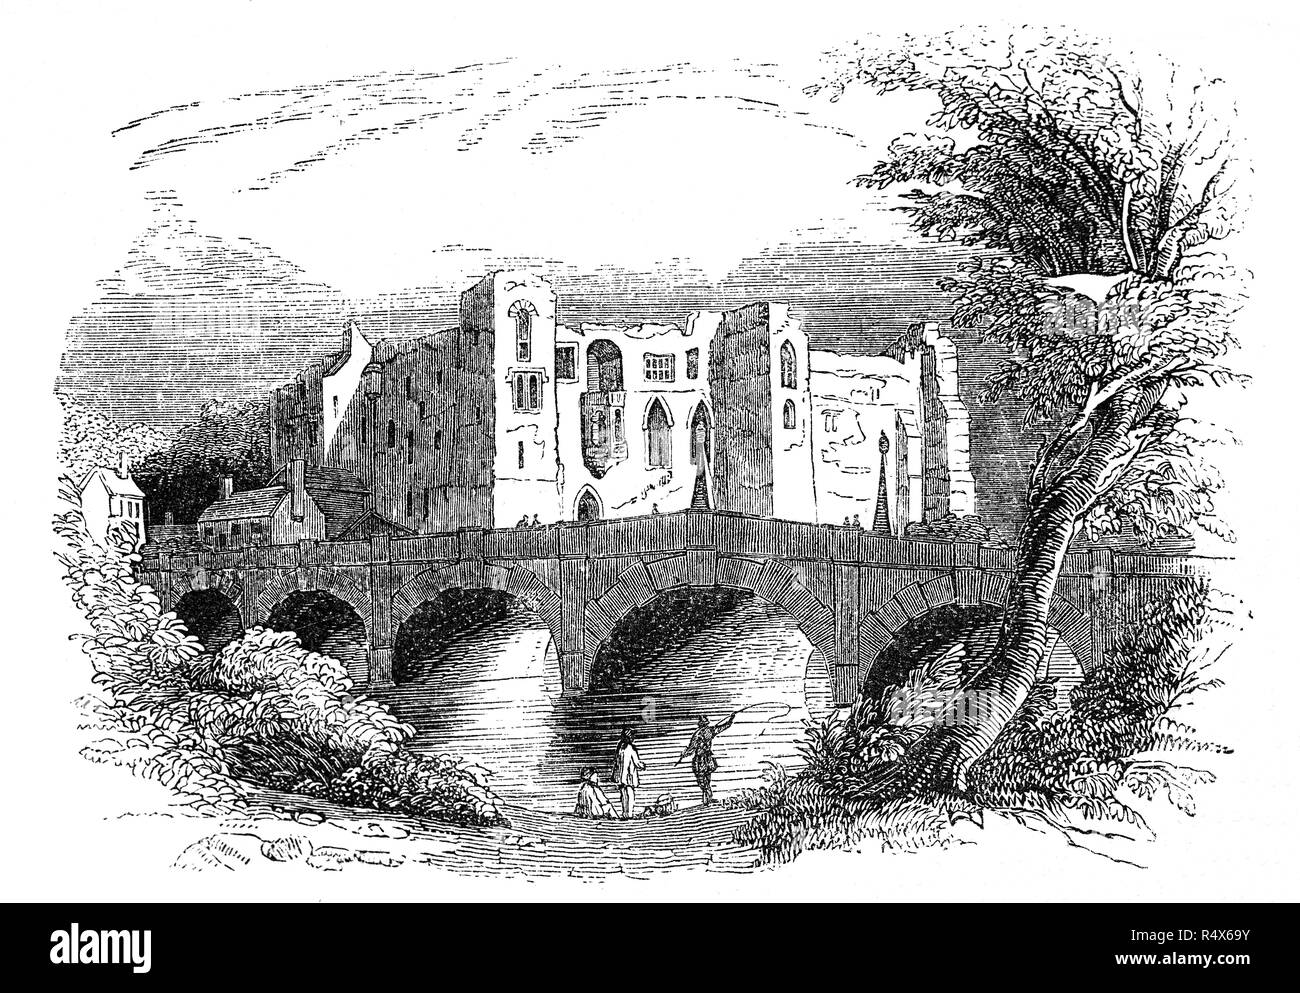 Newark Castle und die Brücke in Newark-on-Trent, im englischen Grafschaft Nottinghamshire war im Jahr 1135, als König Heinrich I. erteilt Alexander, Bischof von Lincoln Erlaubnis, ein Schloss am anderen Ufer des Flusses Trent zu errichten, gegründet. Die ursprünglich aus Holz Burg gebaut, umgebaut in Stein gegen Ende des Jahrhunderts. King John starb nach einem fest an dieses Schloss in der Nacht vom 18. Oktober 1216 von dysenterie. Es war im 17. Jahrhundert nach dem Englischen Bürgerkrieg zerlegt, sondern Schloss aus dem 19. Jahrhundert restauriert. Stockfoto